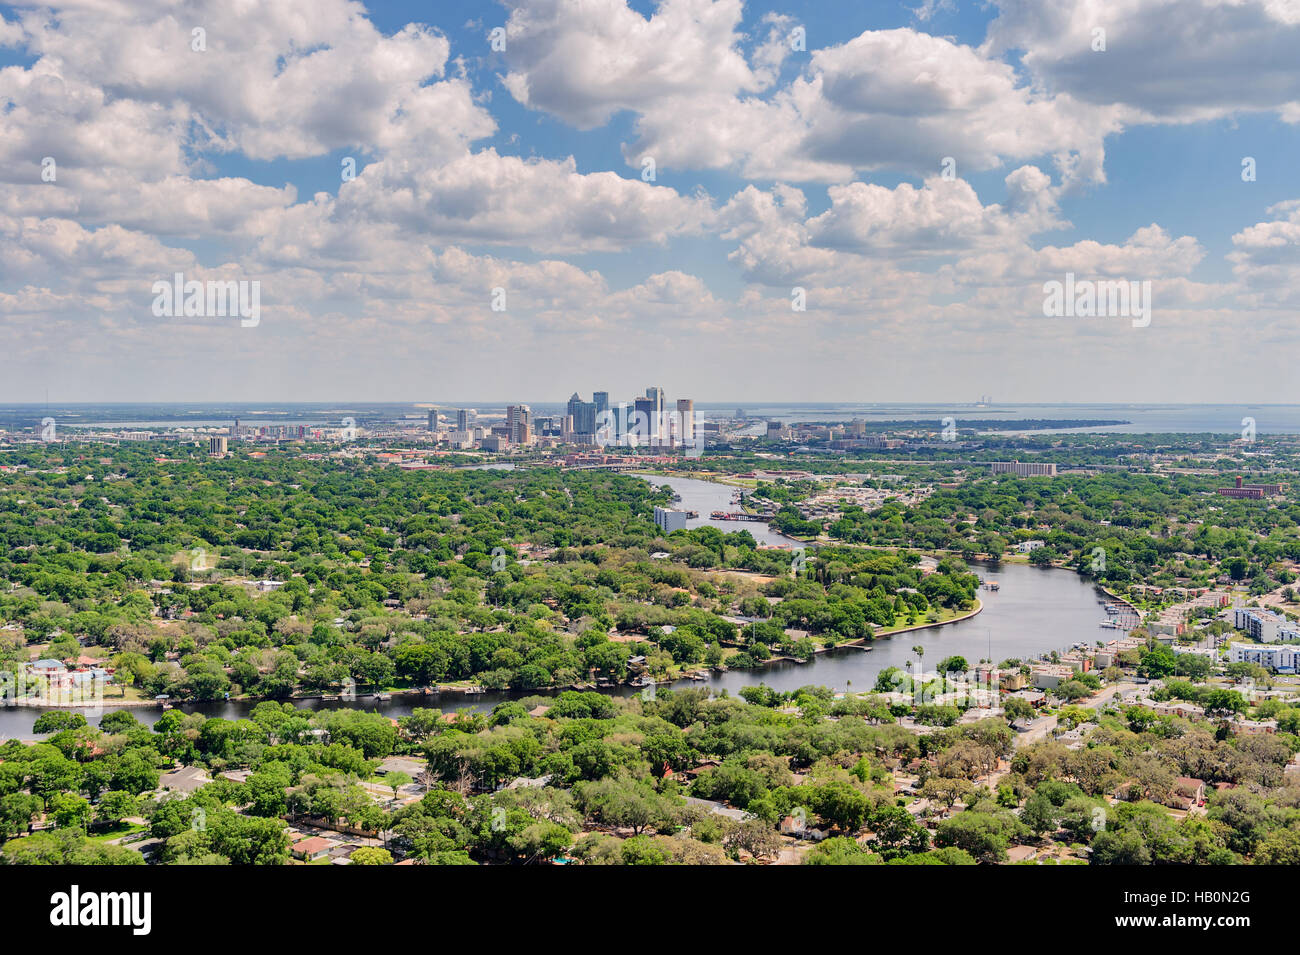 Vista aérea de Tampa, Florida, EE.UU., con el río Hillsborough que fluye hacia la bahía mostrando los muchos suburbios y barrios de la ciudad. Foto de stock